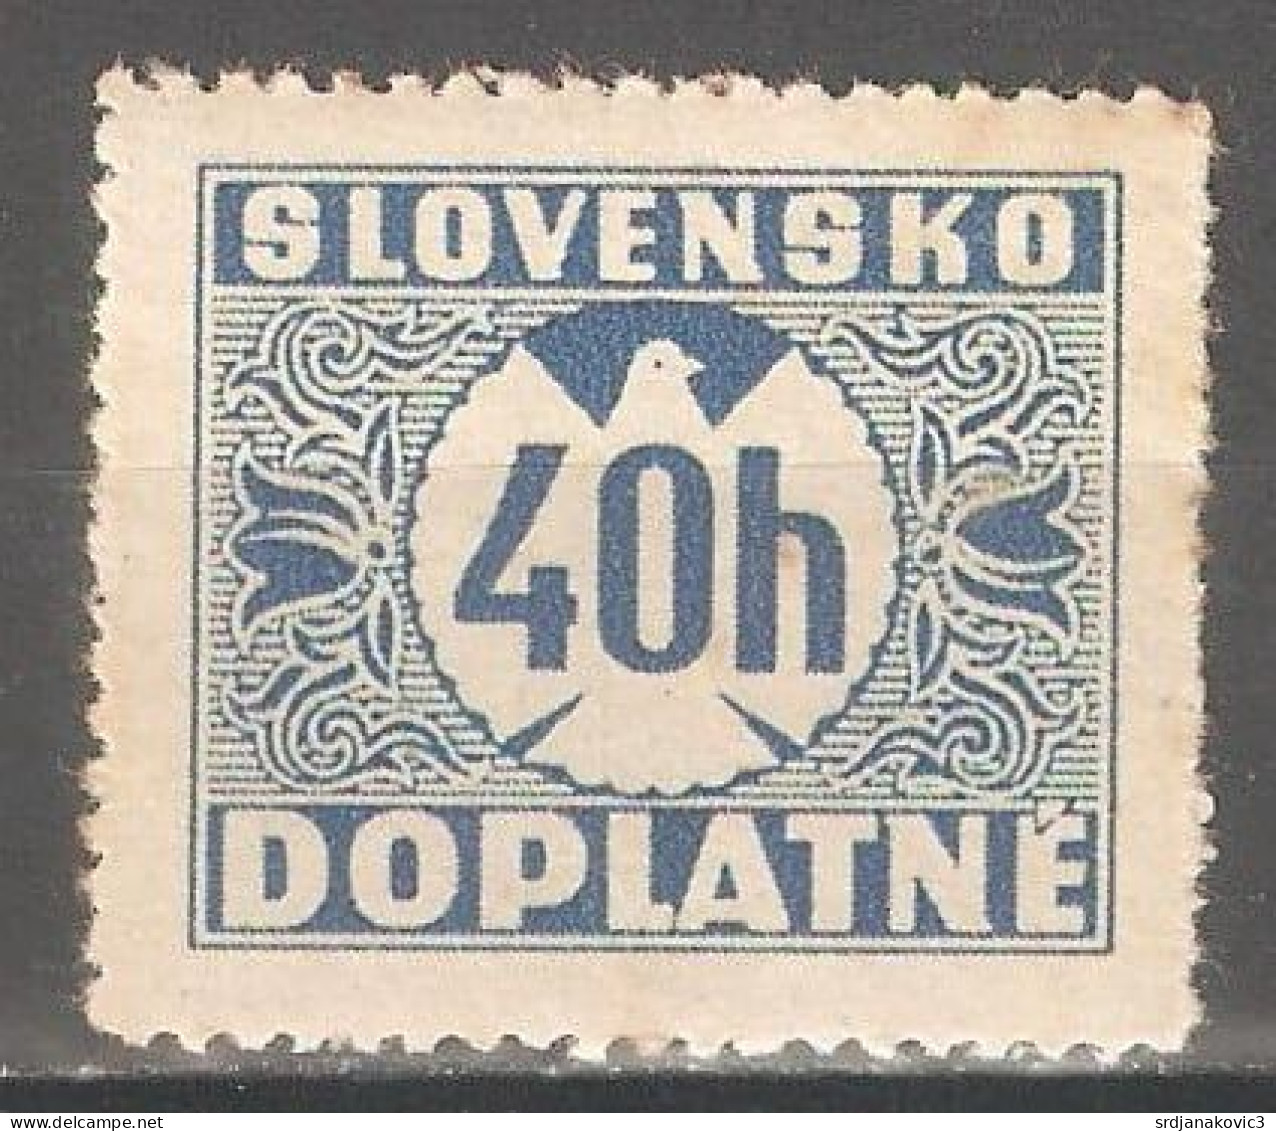 Ceskoslovensko - Unused Stamps